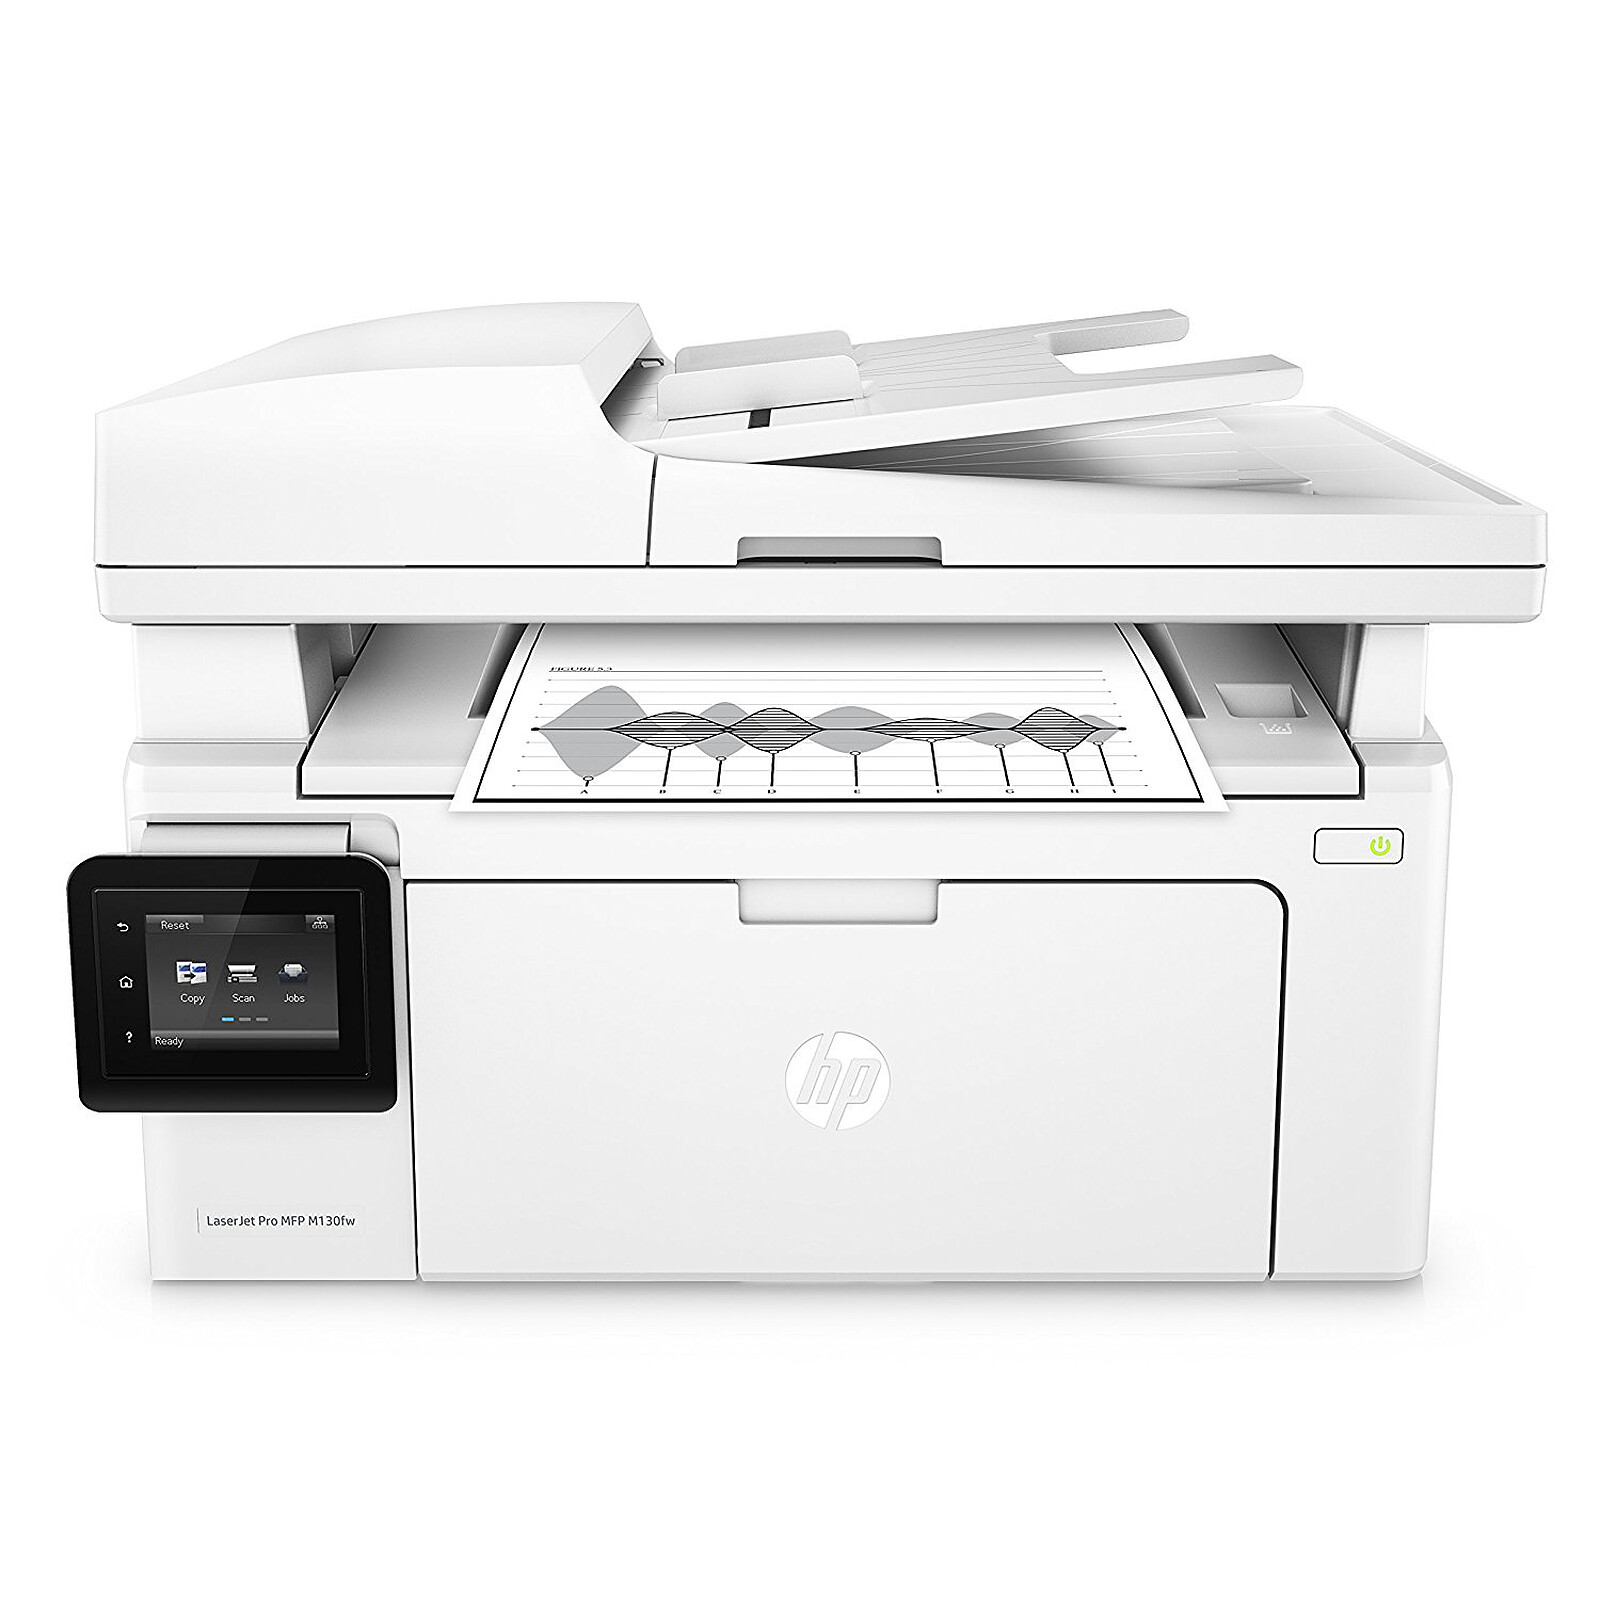 HP Color LaserJet Pro MFP M183fw Impresora láser color A4 multifunción con  WiFi (4 en 1) HP